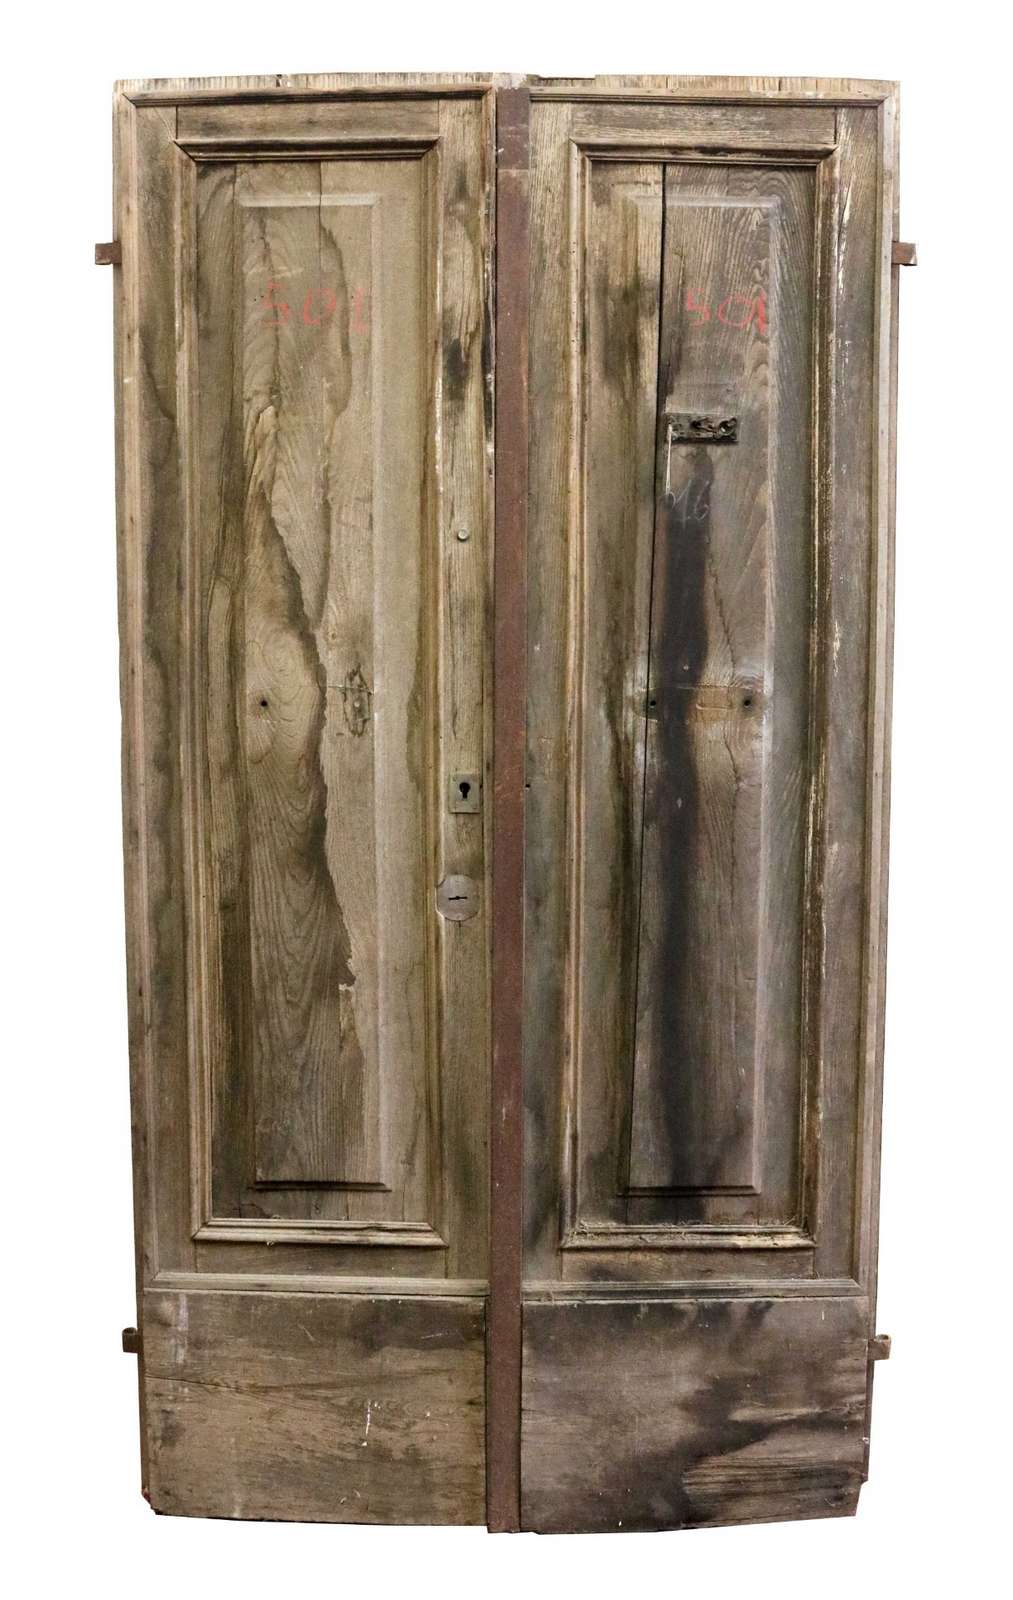 Portone antico in legno di Castagno con rinforzo in ferro. Epoca 1800. - Portoni Antichi - Porte Antiche - Prodotti - Antichità Fiorillo